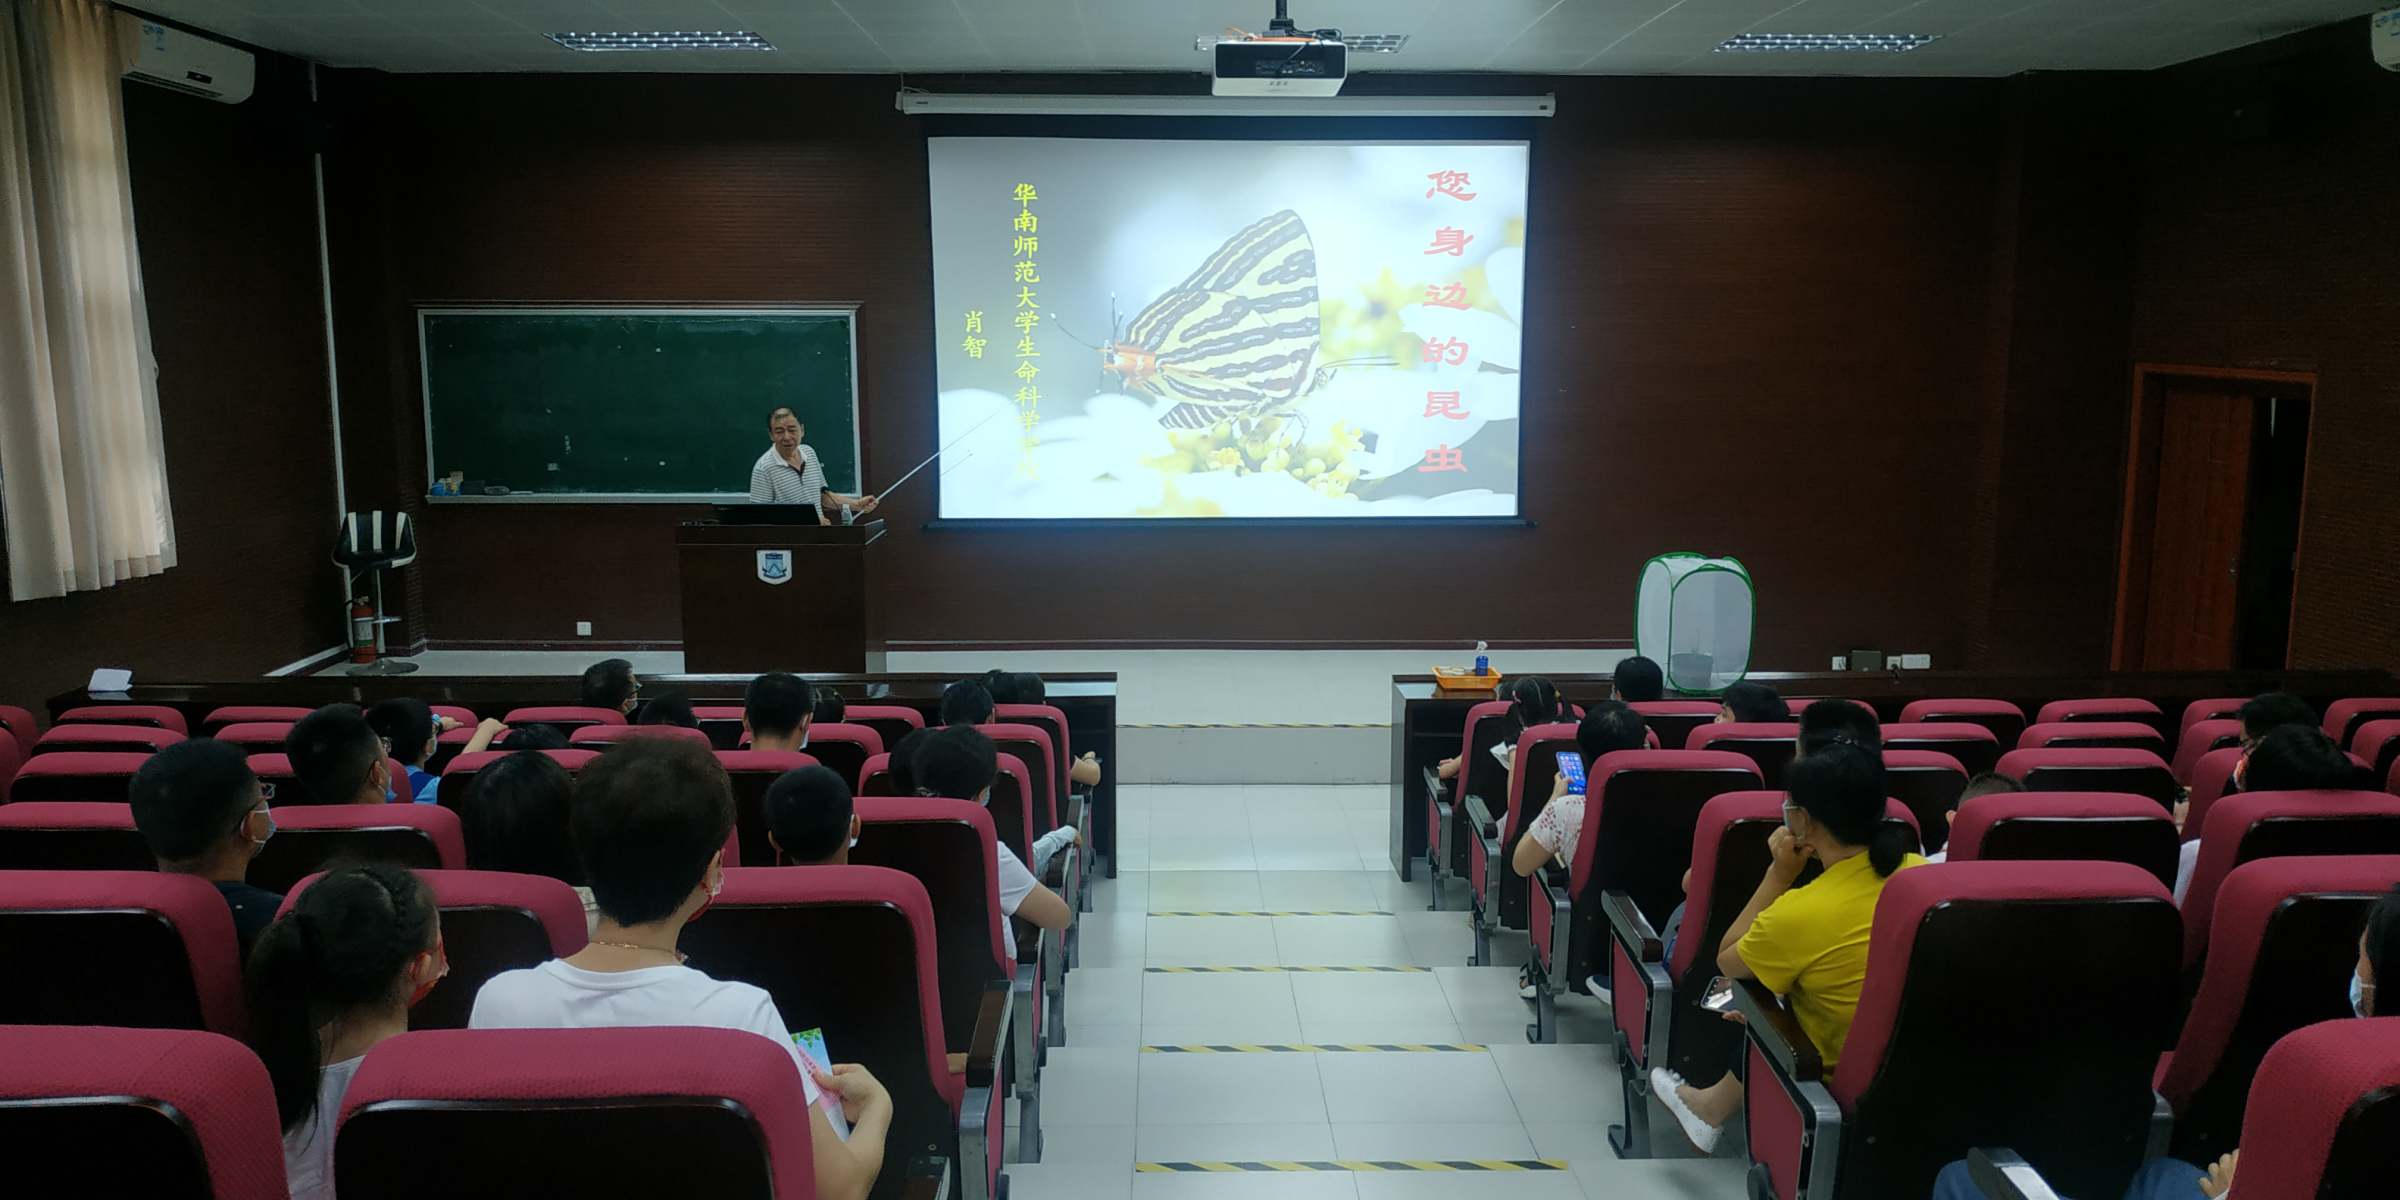 华南师范大学生物标本馆举办系列科普活动为广州科普开放日赋能添彩